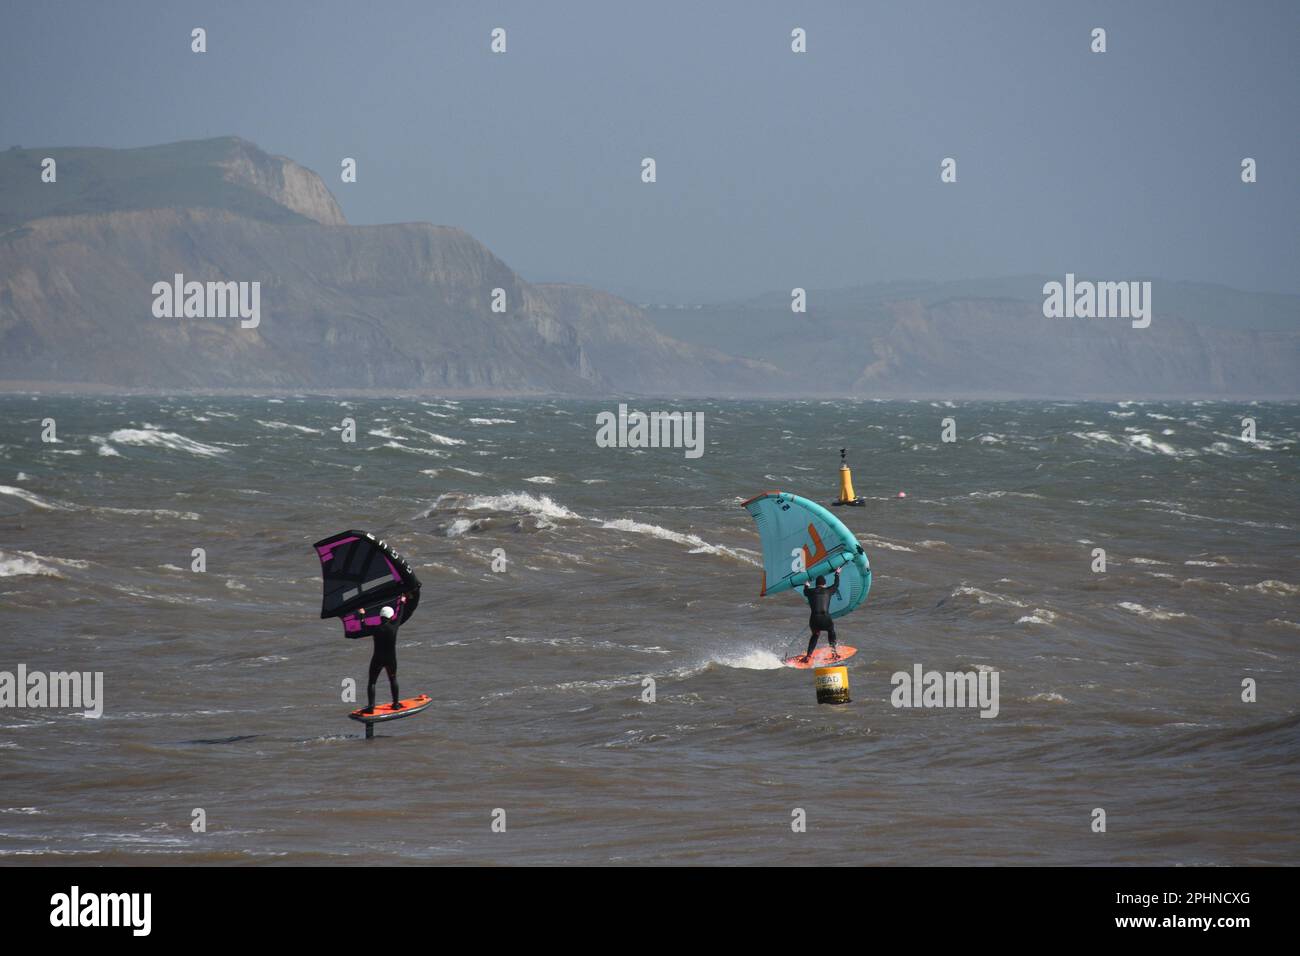 Un paio di Wing Foil Surfers scivola attraverso un mare mosso alimentato da una brezza rigida al largo della costa Jurrasic a Lyme Bay. Dorset.UK Foto Stock